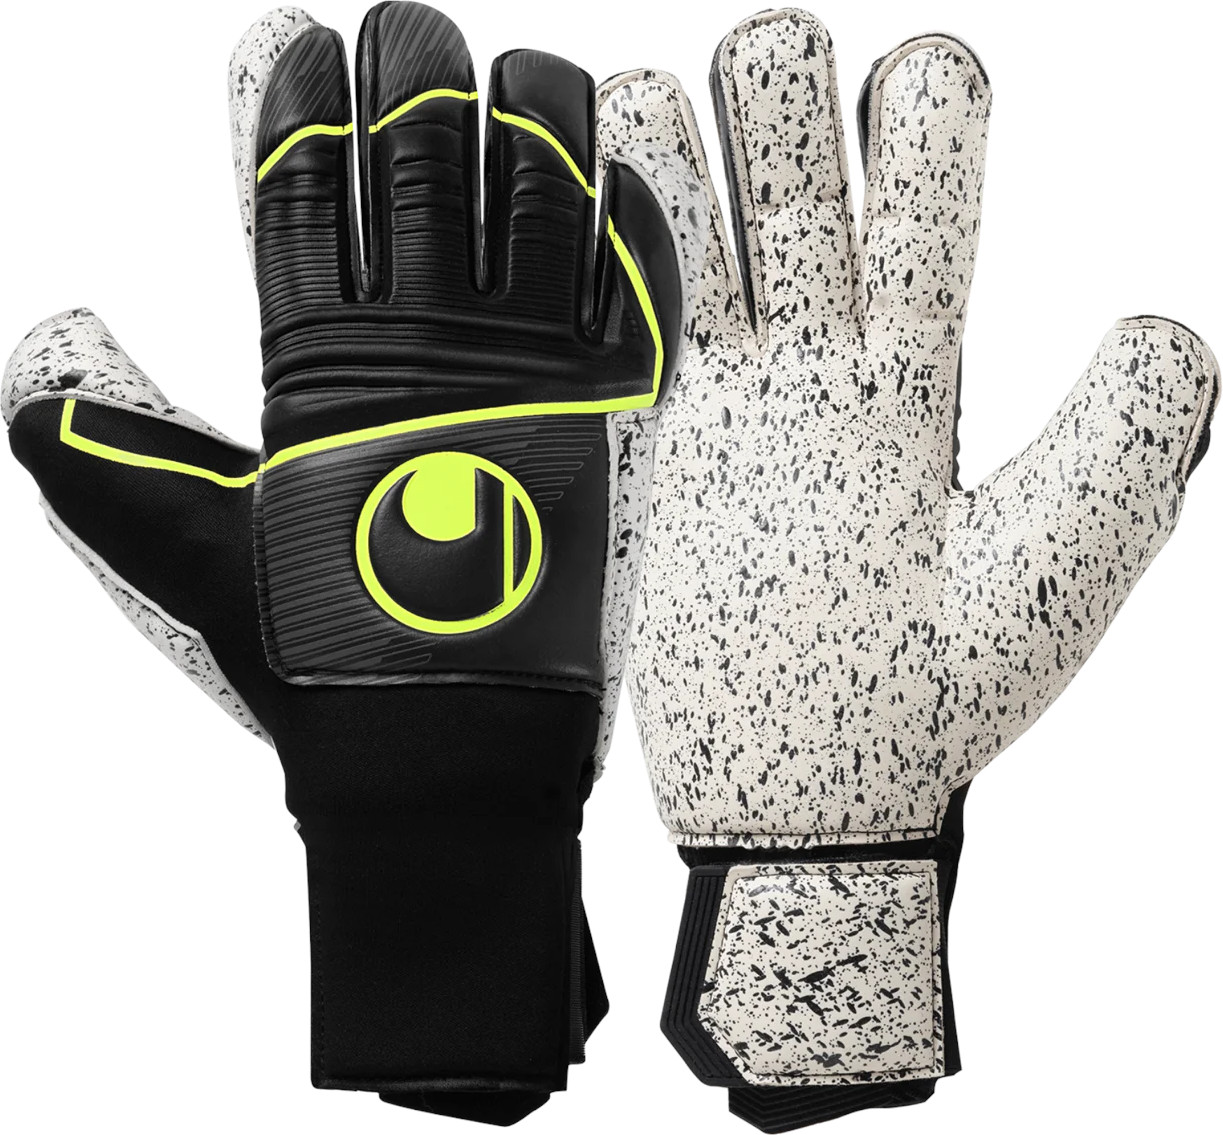 Goalkeeper's gloves Uhlsport Supergrip+ Flex Frame Carbon